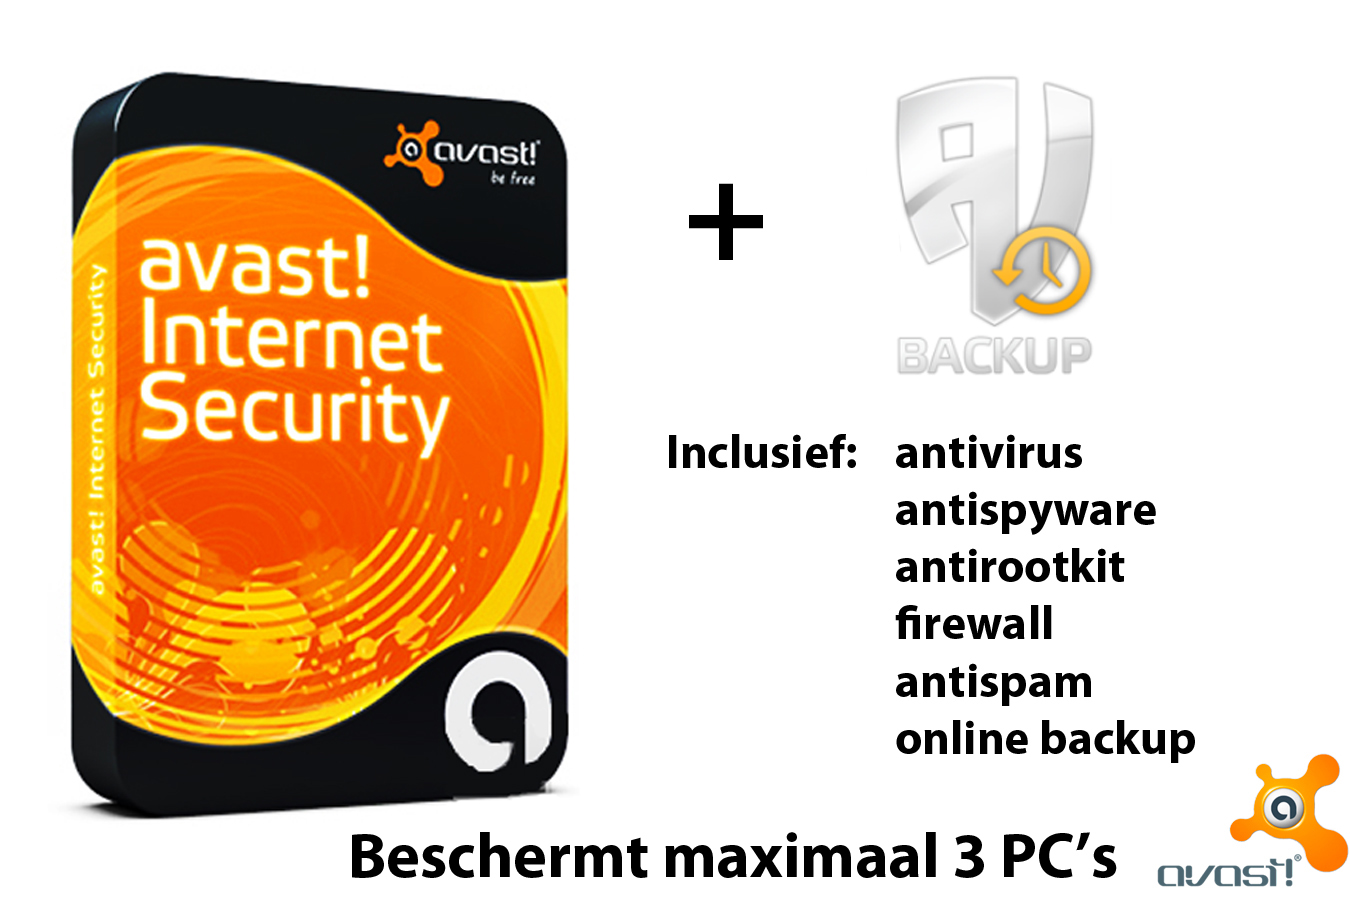 Today's Best Deal - Internet Security+AV Backup